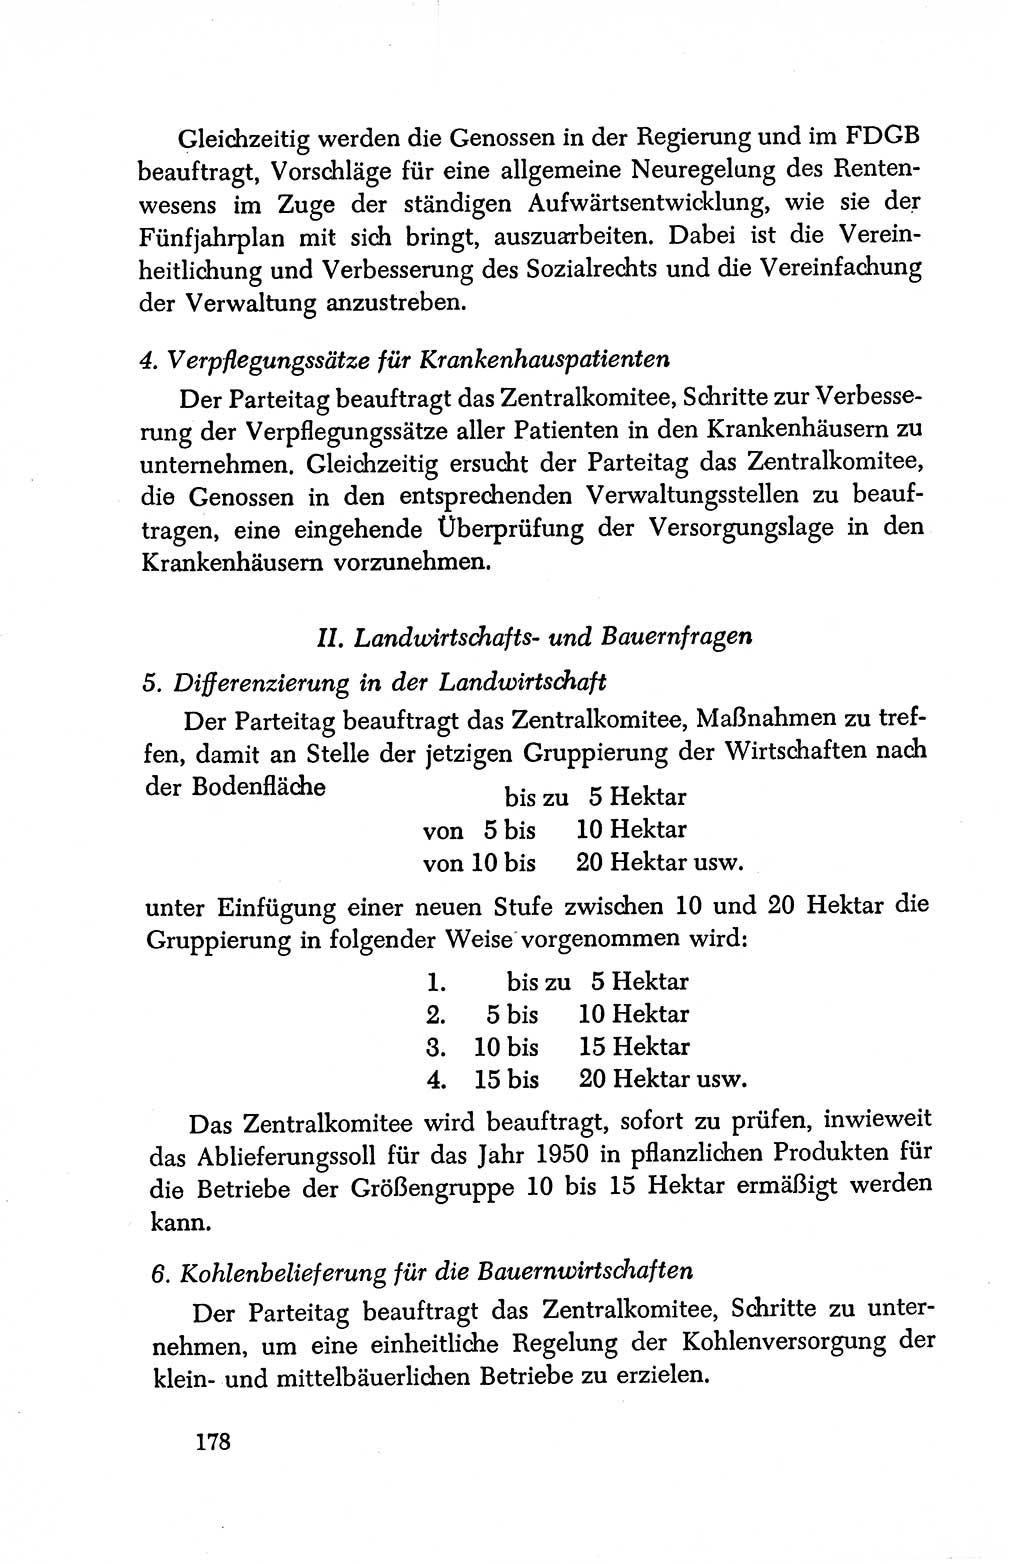 Dokumente der Sozialistischen Einheitspartei Deutschlands (SED) [Deutsche Demokratische Republik (DDR)] 1950-1952, Seite 178 (Dok. SED DDR 1950-1952, S. 178)